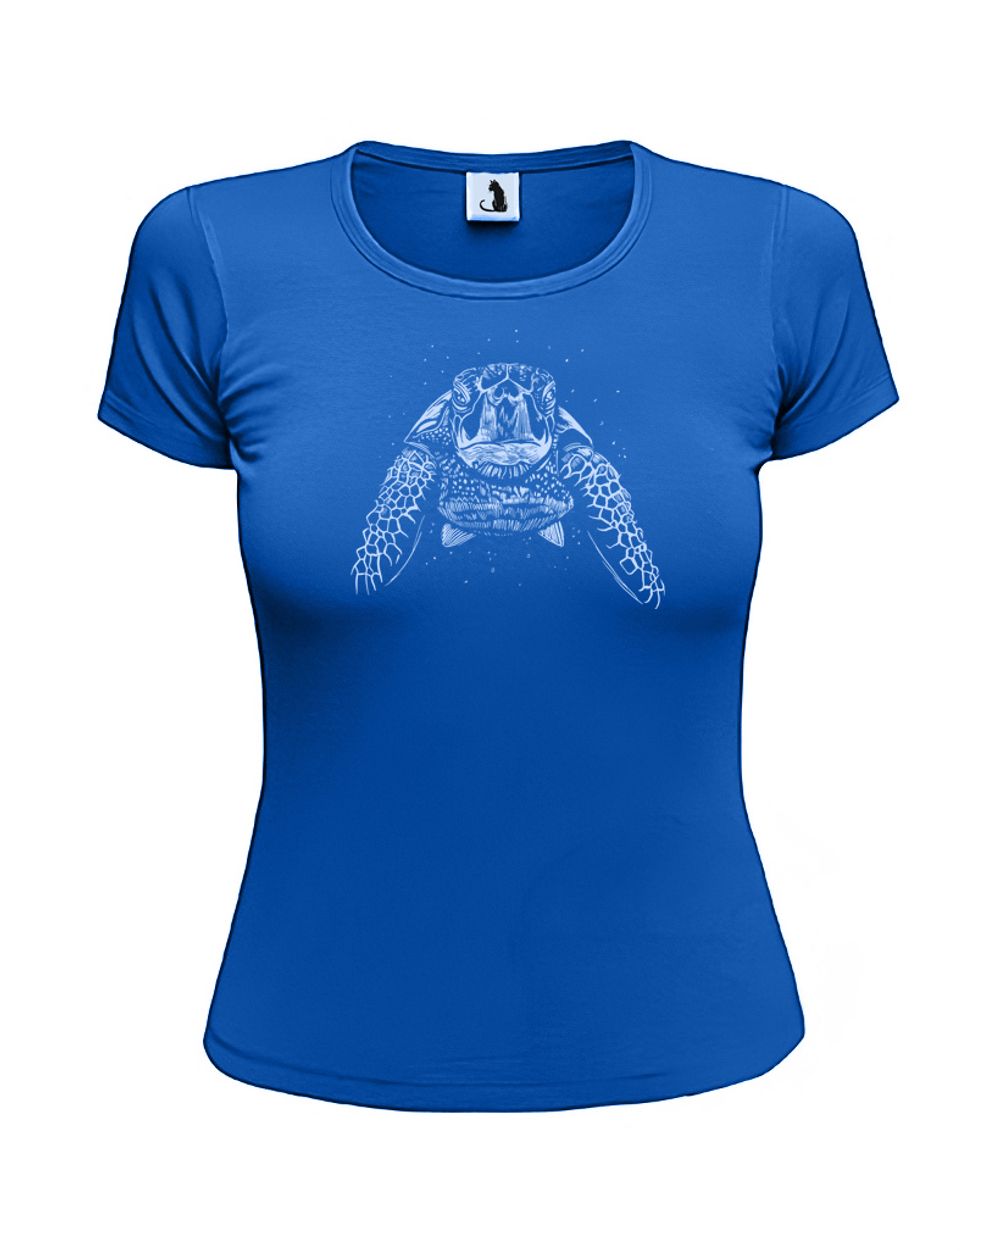 Футболка с черепахой женская приталенная синяя с голубым рисунком